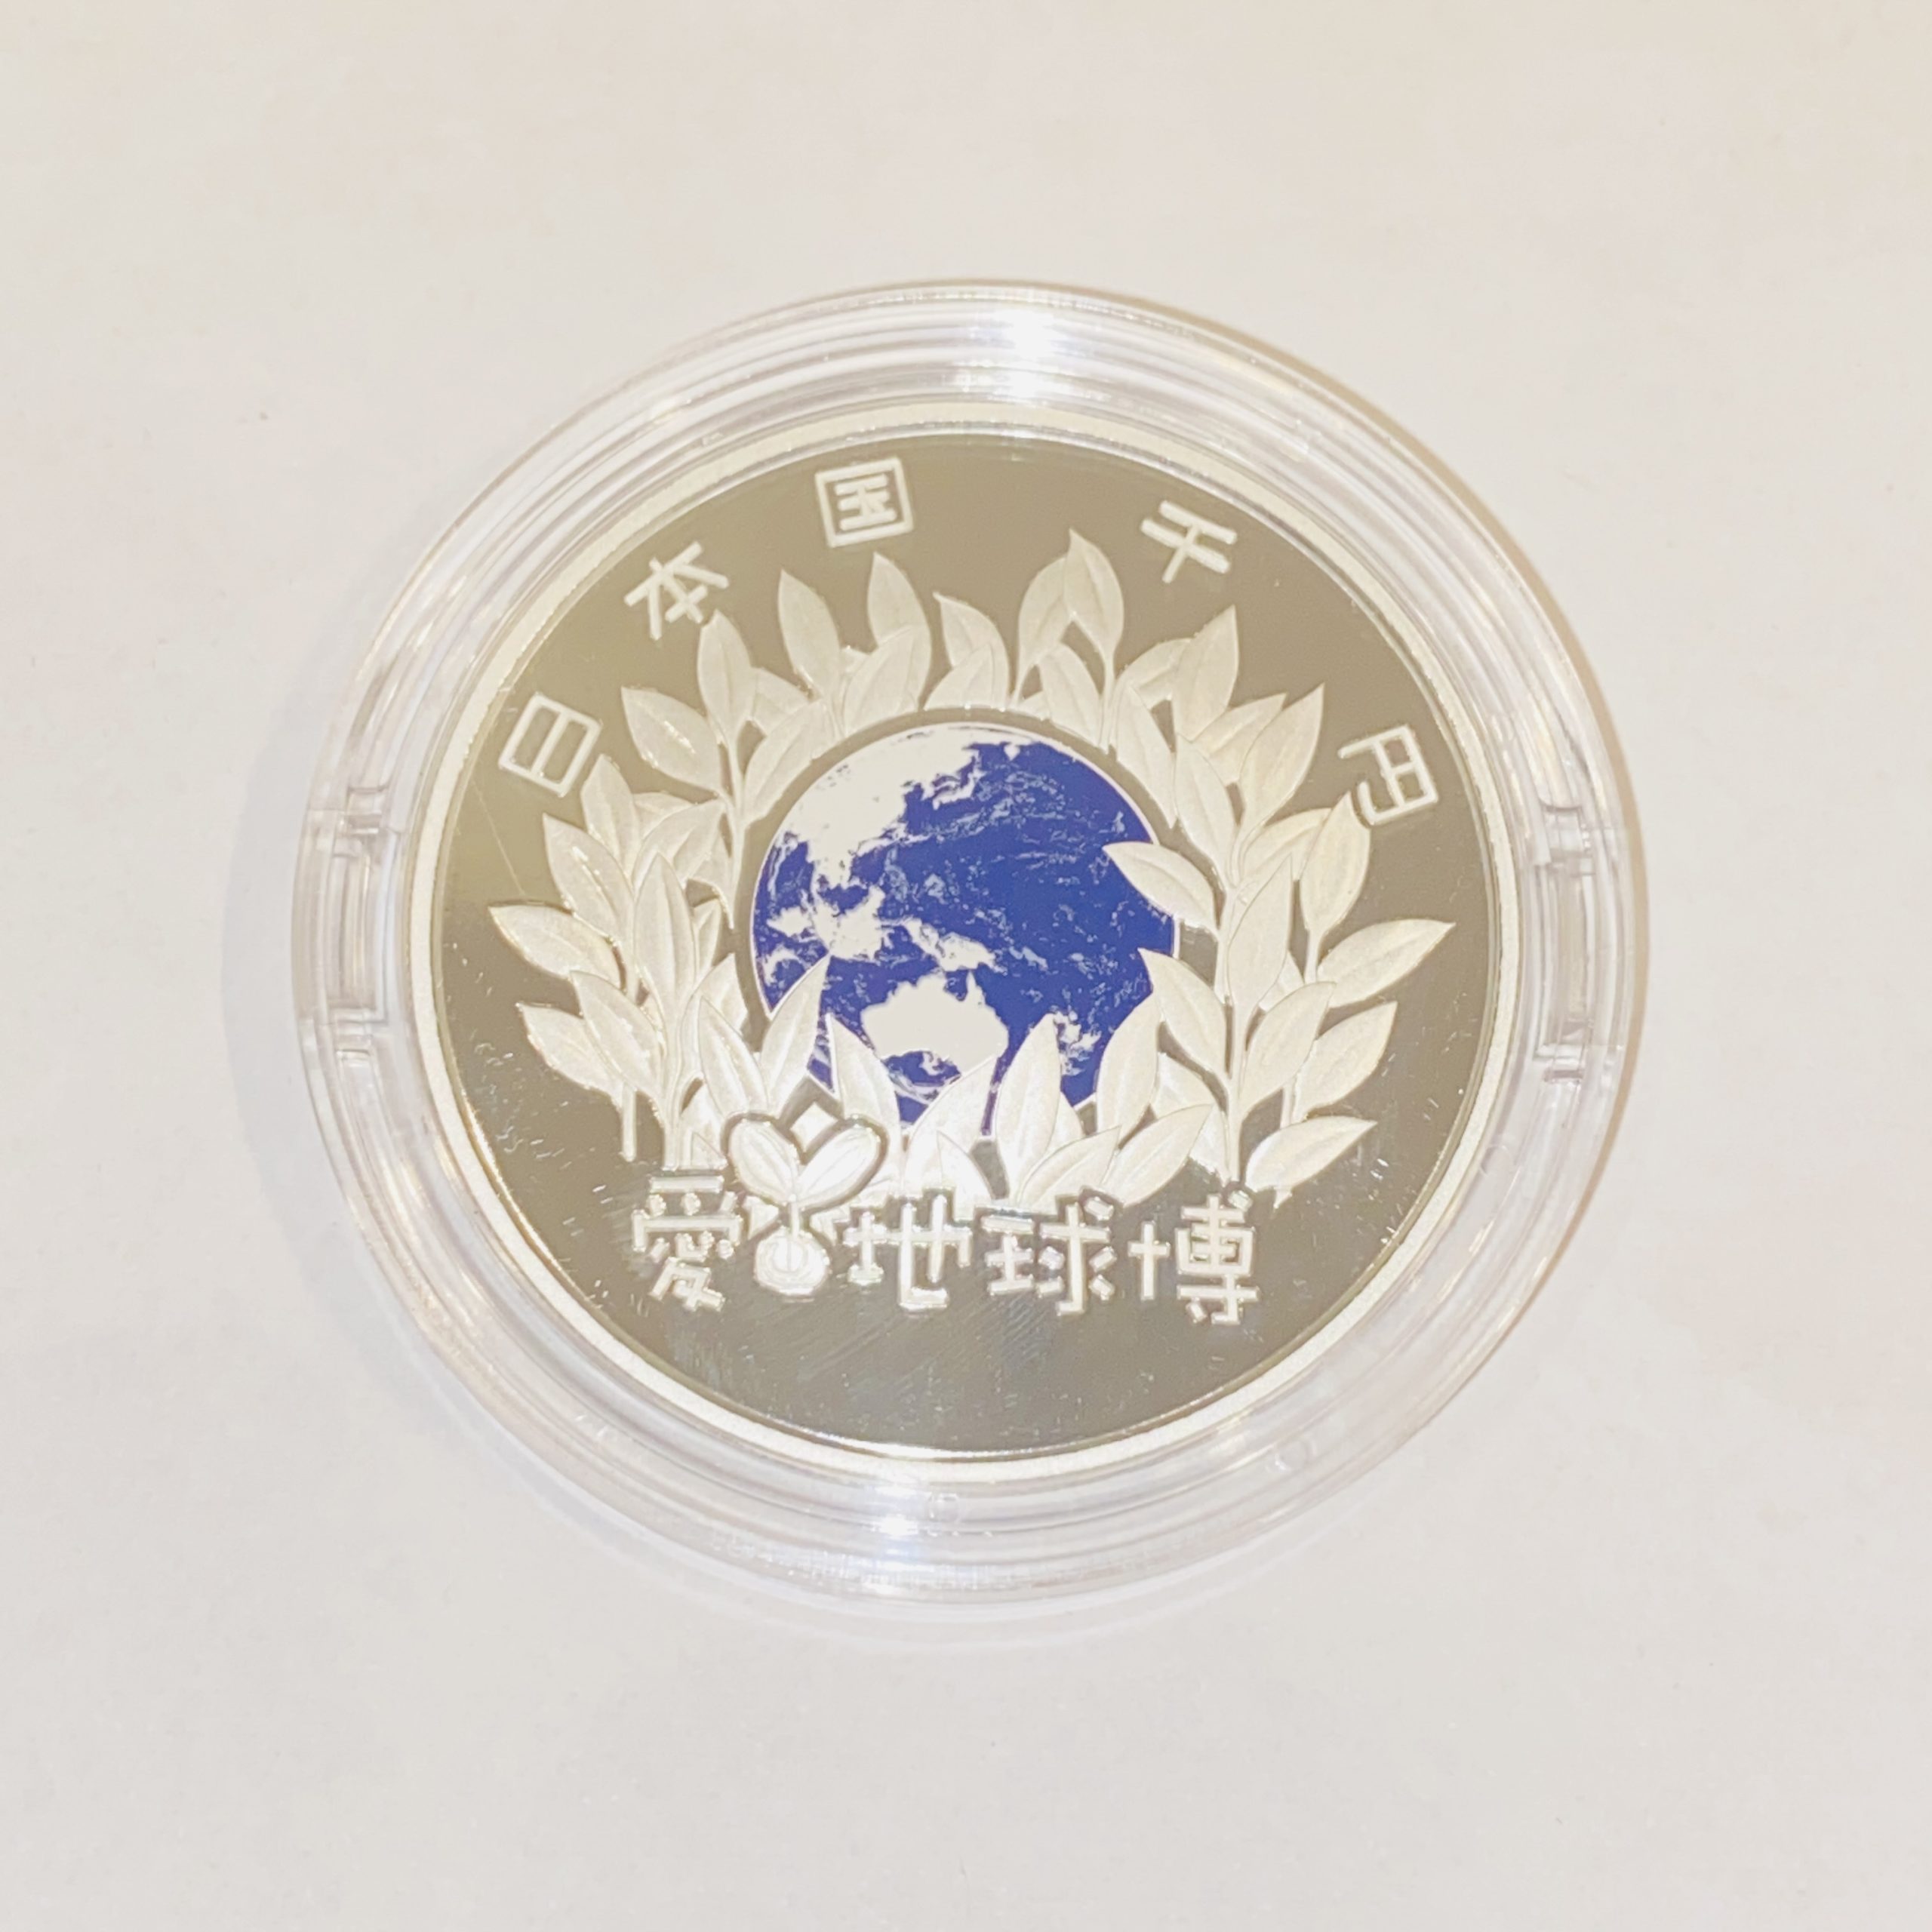 【カラー銀貨】愛地球博(愛知万博) 日本国際博覧会記念 1000円銀貨 2005年 expo/エキスポ